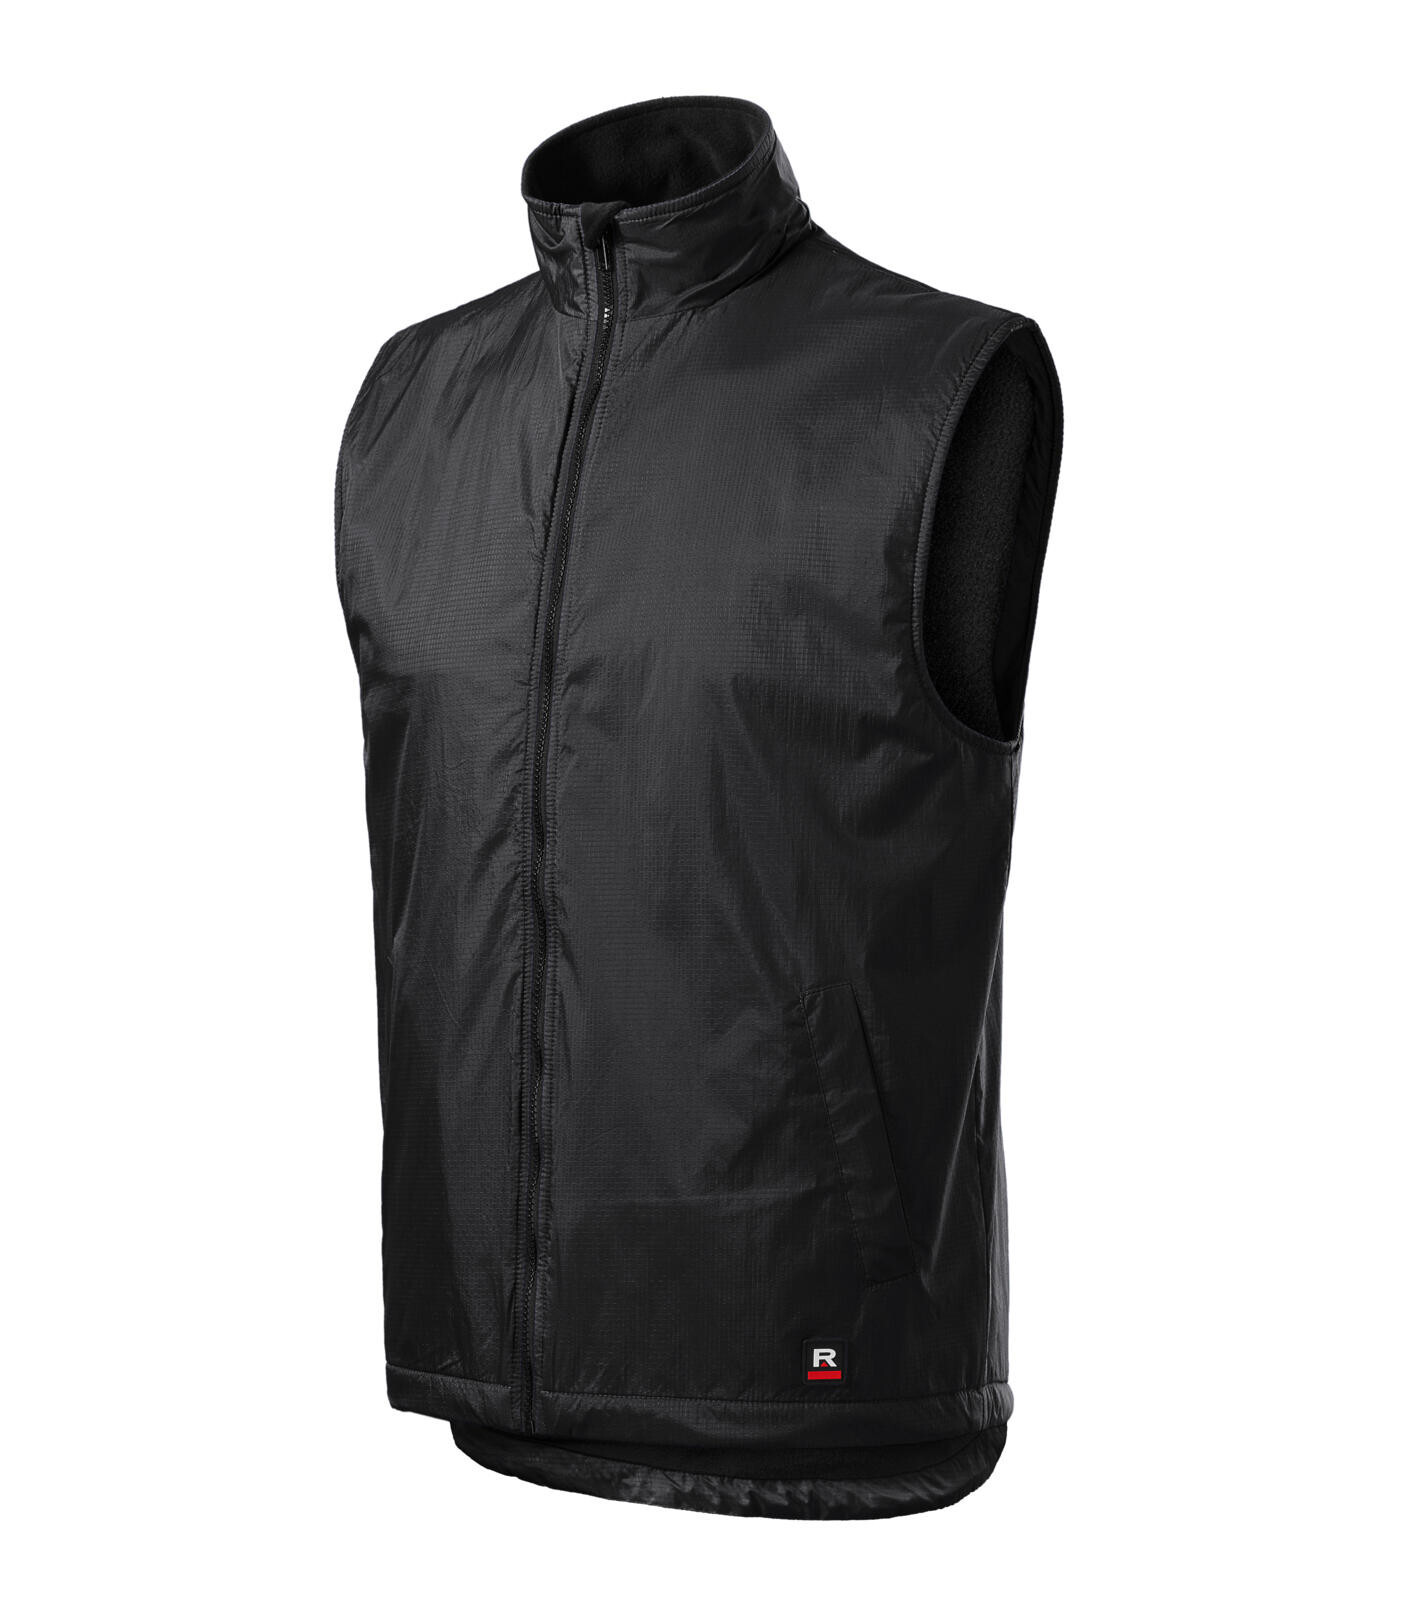 Unisex zateplená vesta Rimeck Body Warmer 509 - veľkosť: M, farba: ebony grey